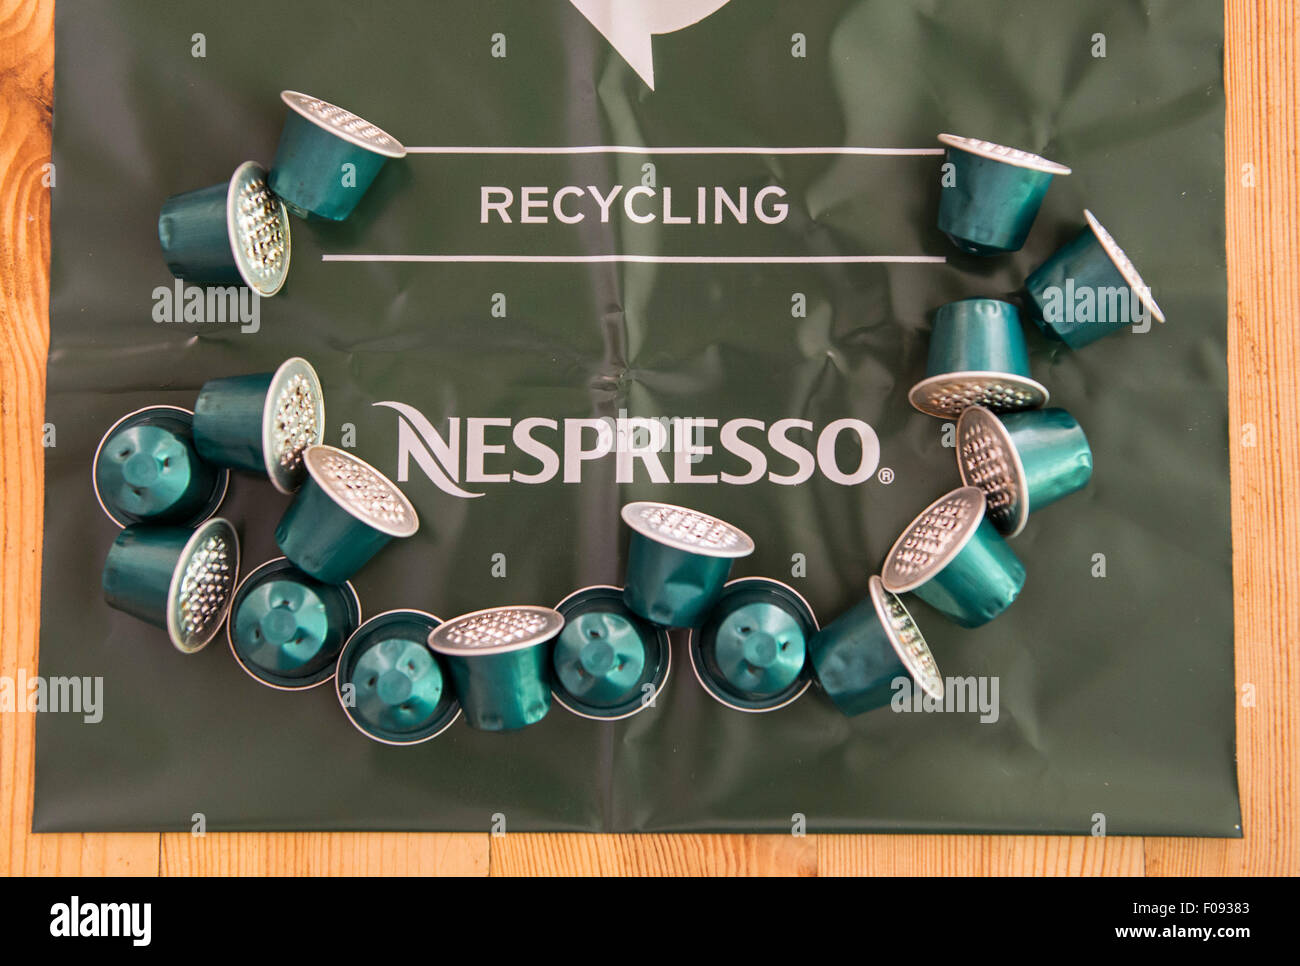 Nespresso Kaffee Kapseln auf eine Nespresso recycling Tasche  Stockfotografie - Alamy